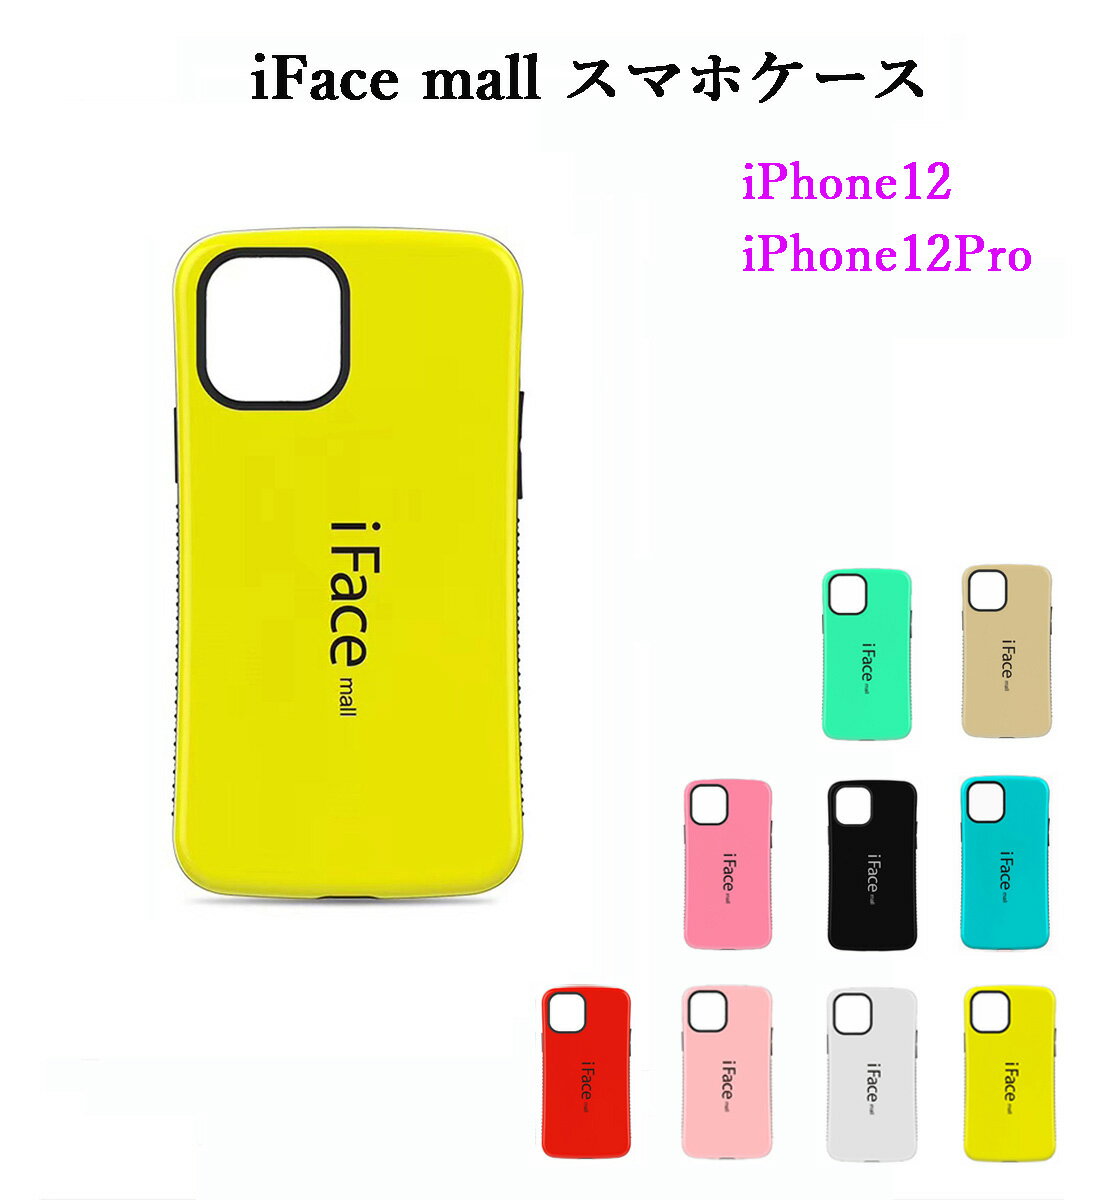 【あす楽 P10倍 クーポンあり】 iFace mall iPhone12 iPhone12Pro ケース アイフェイス モール iPhone 12 Pro カバー アイフォン12 アイフォン12プロ ワイヤレス充電 耐衝撃 可愛い スマホケース TPU バンパー